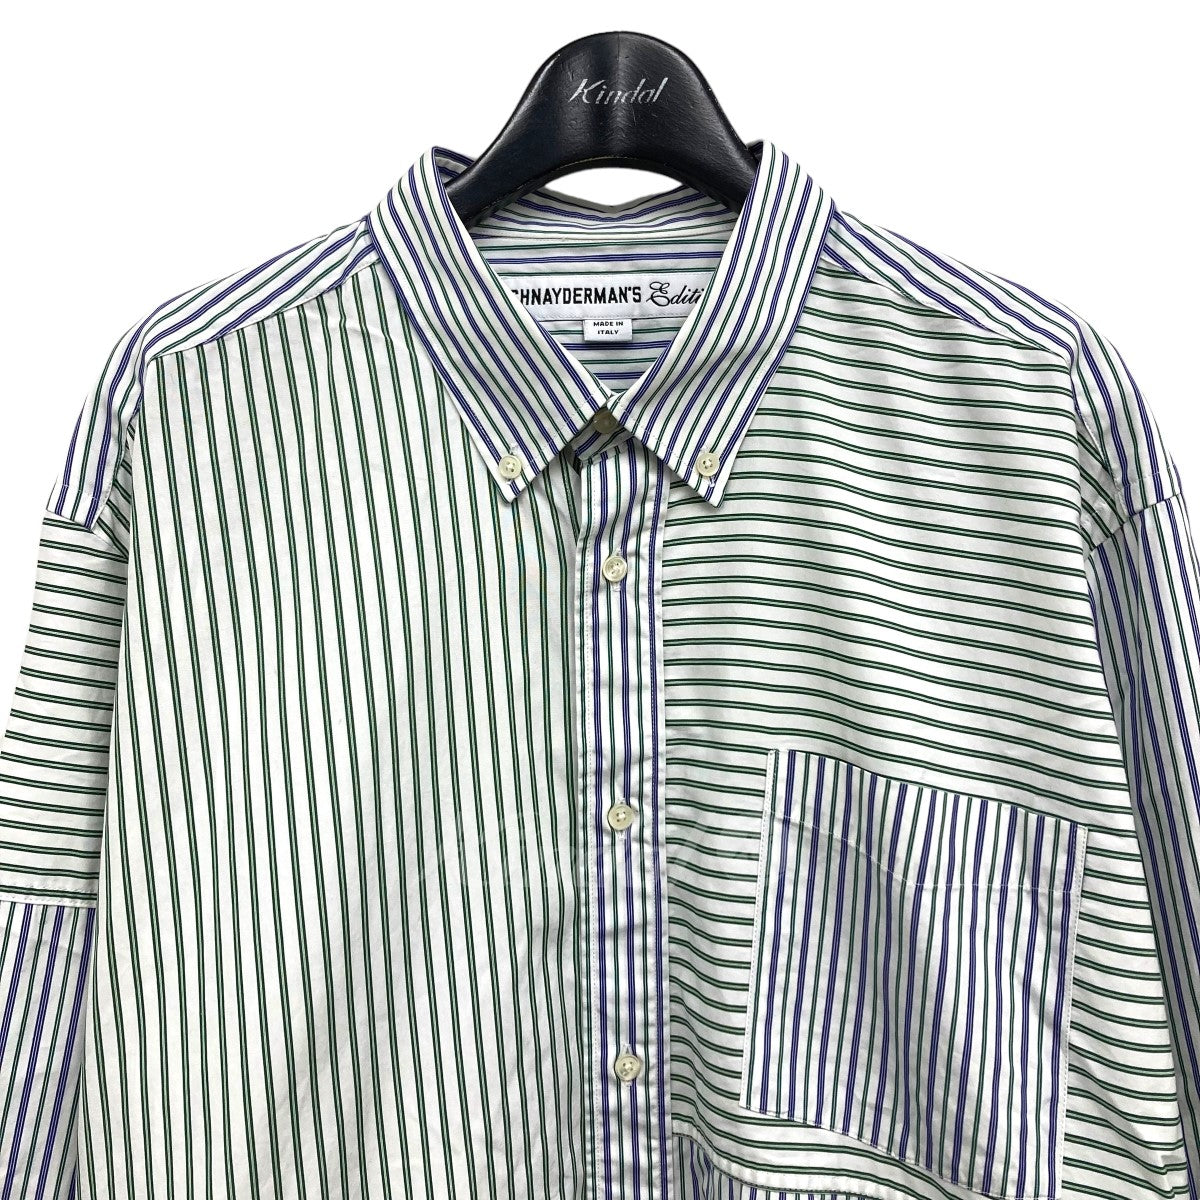 Edition×SCHNAYDERMAN'S 「Patchwork Stripe」ストライプシャツ 